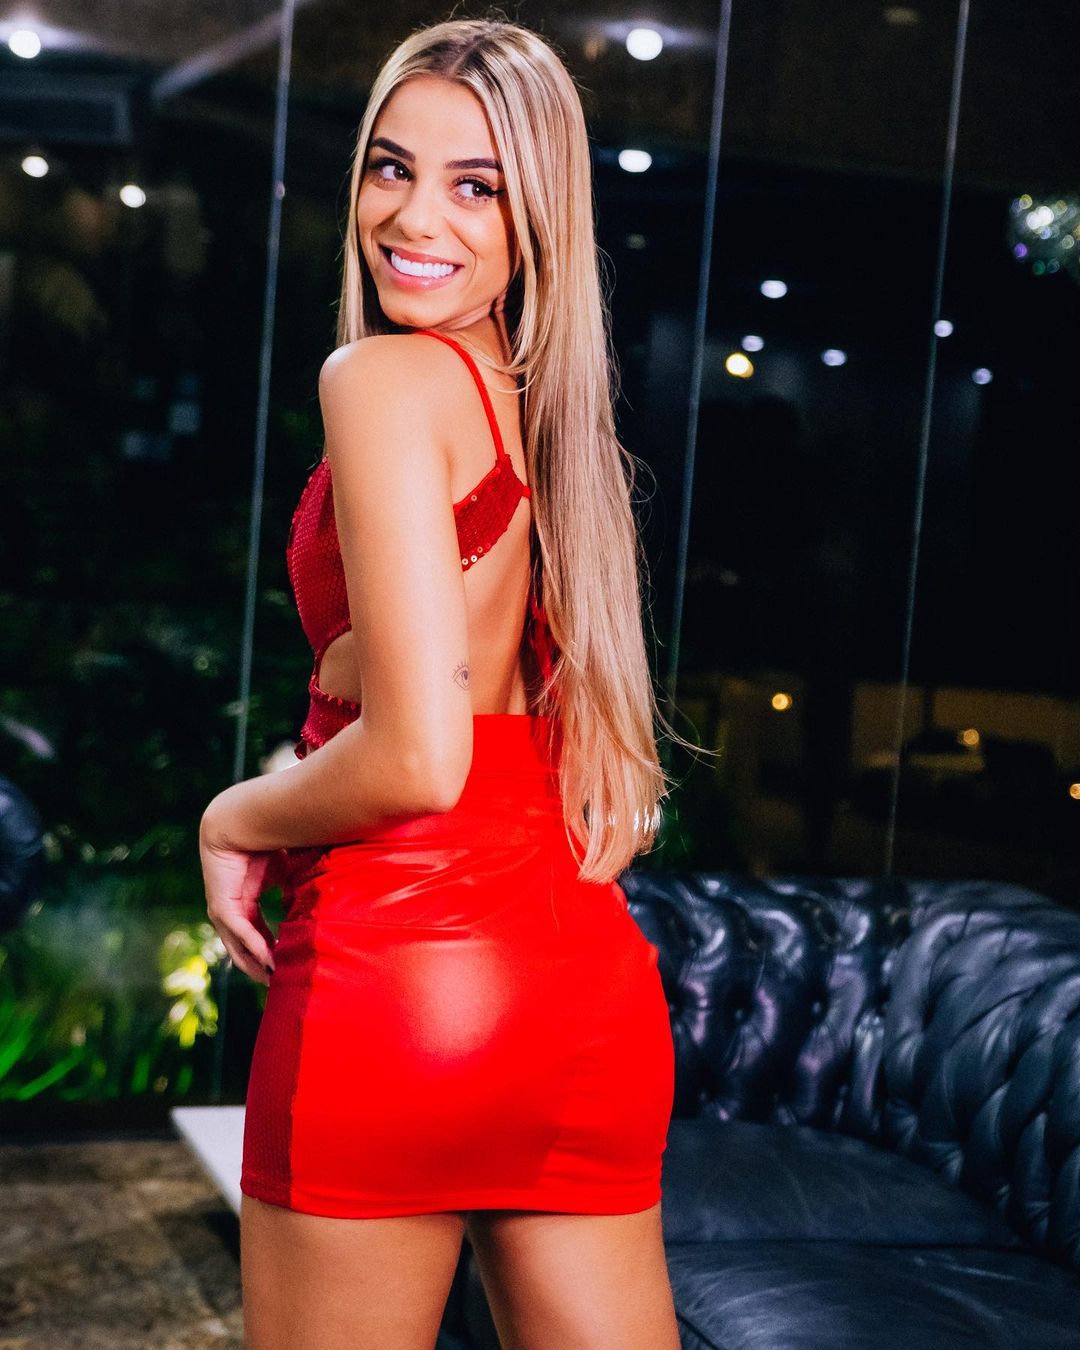 Key Alves in hot red dress